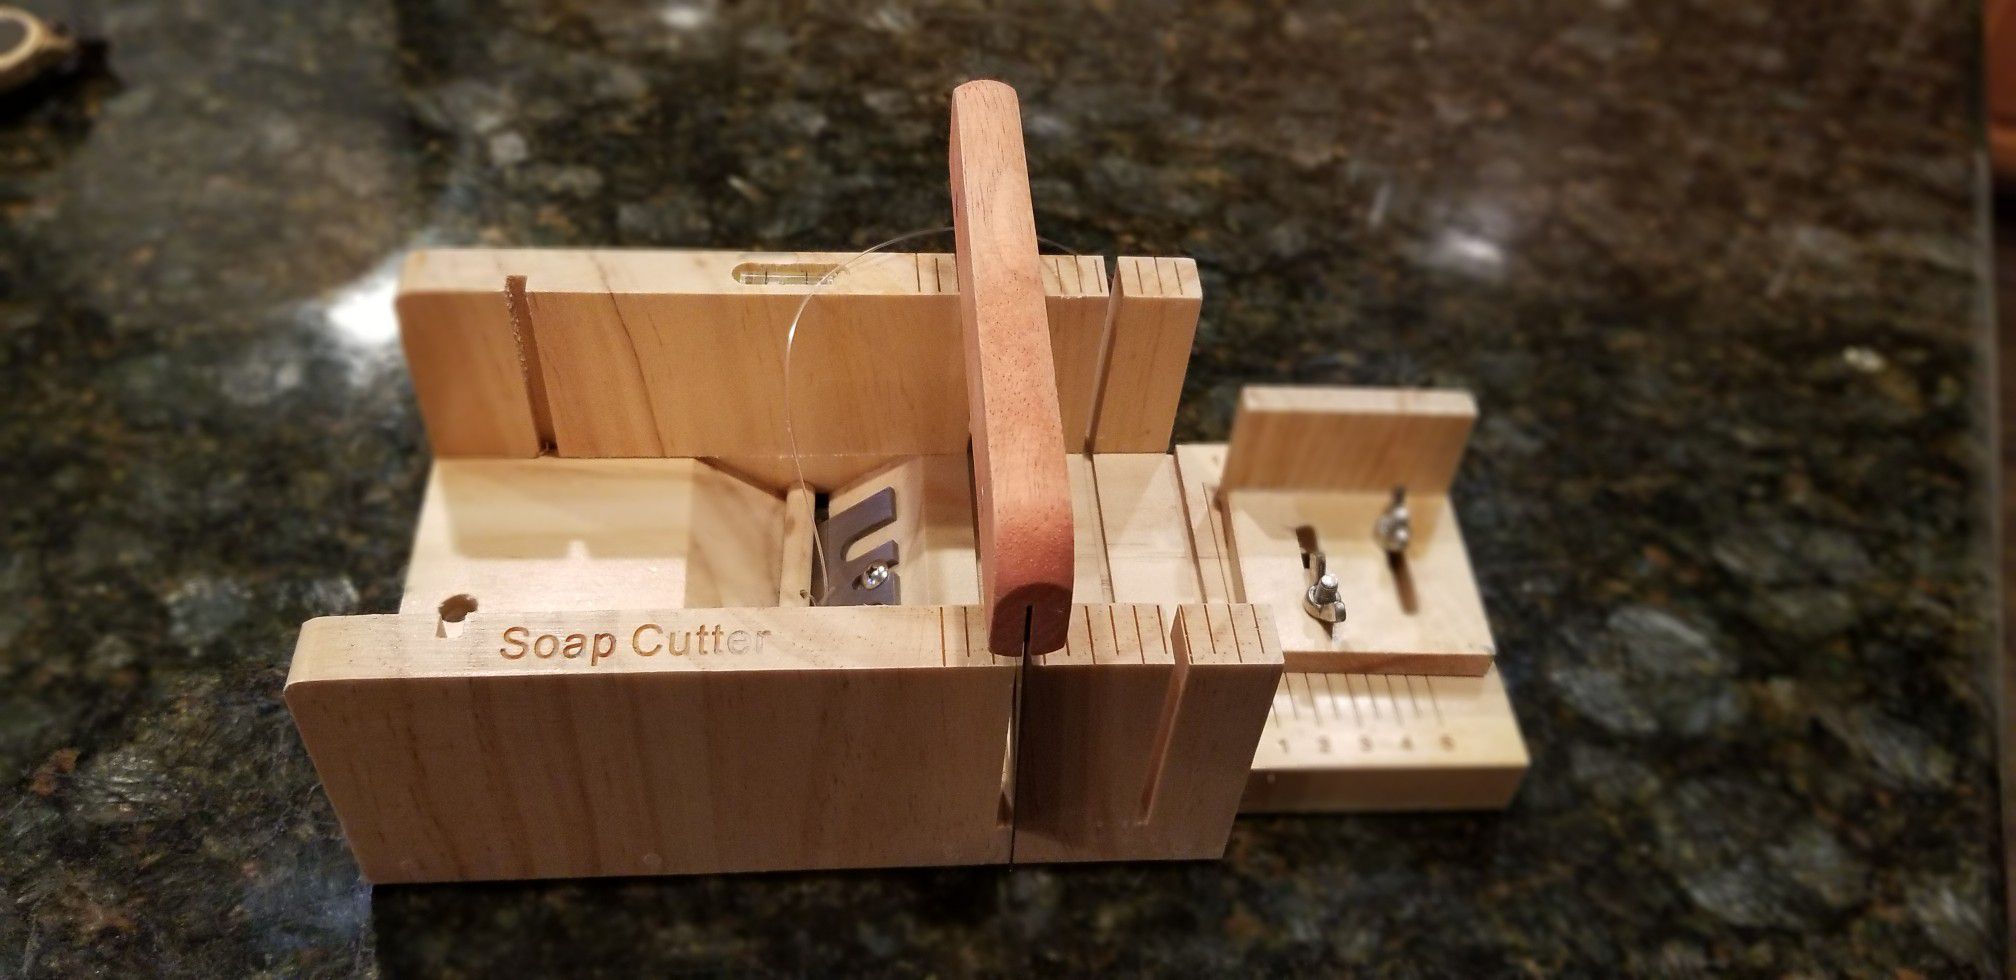 Soap cutter